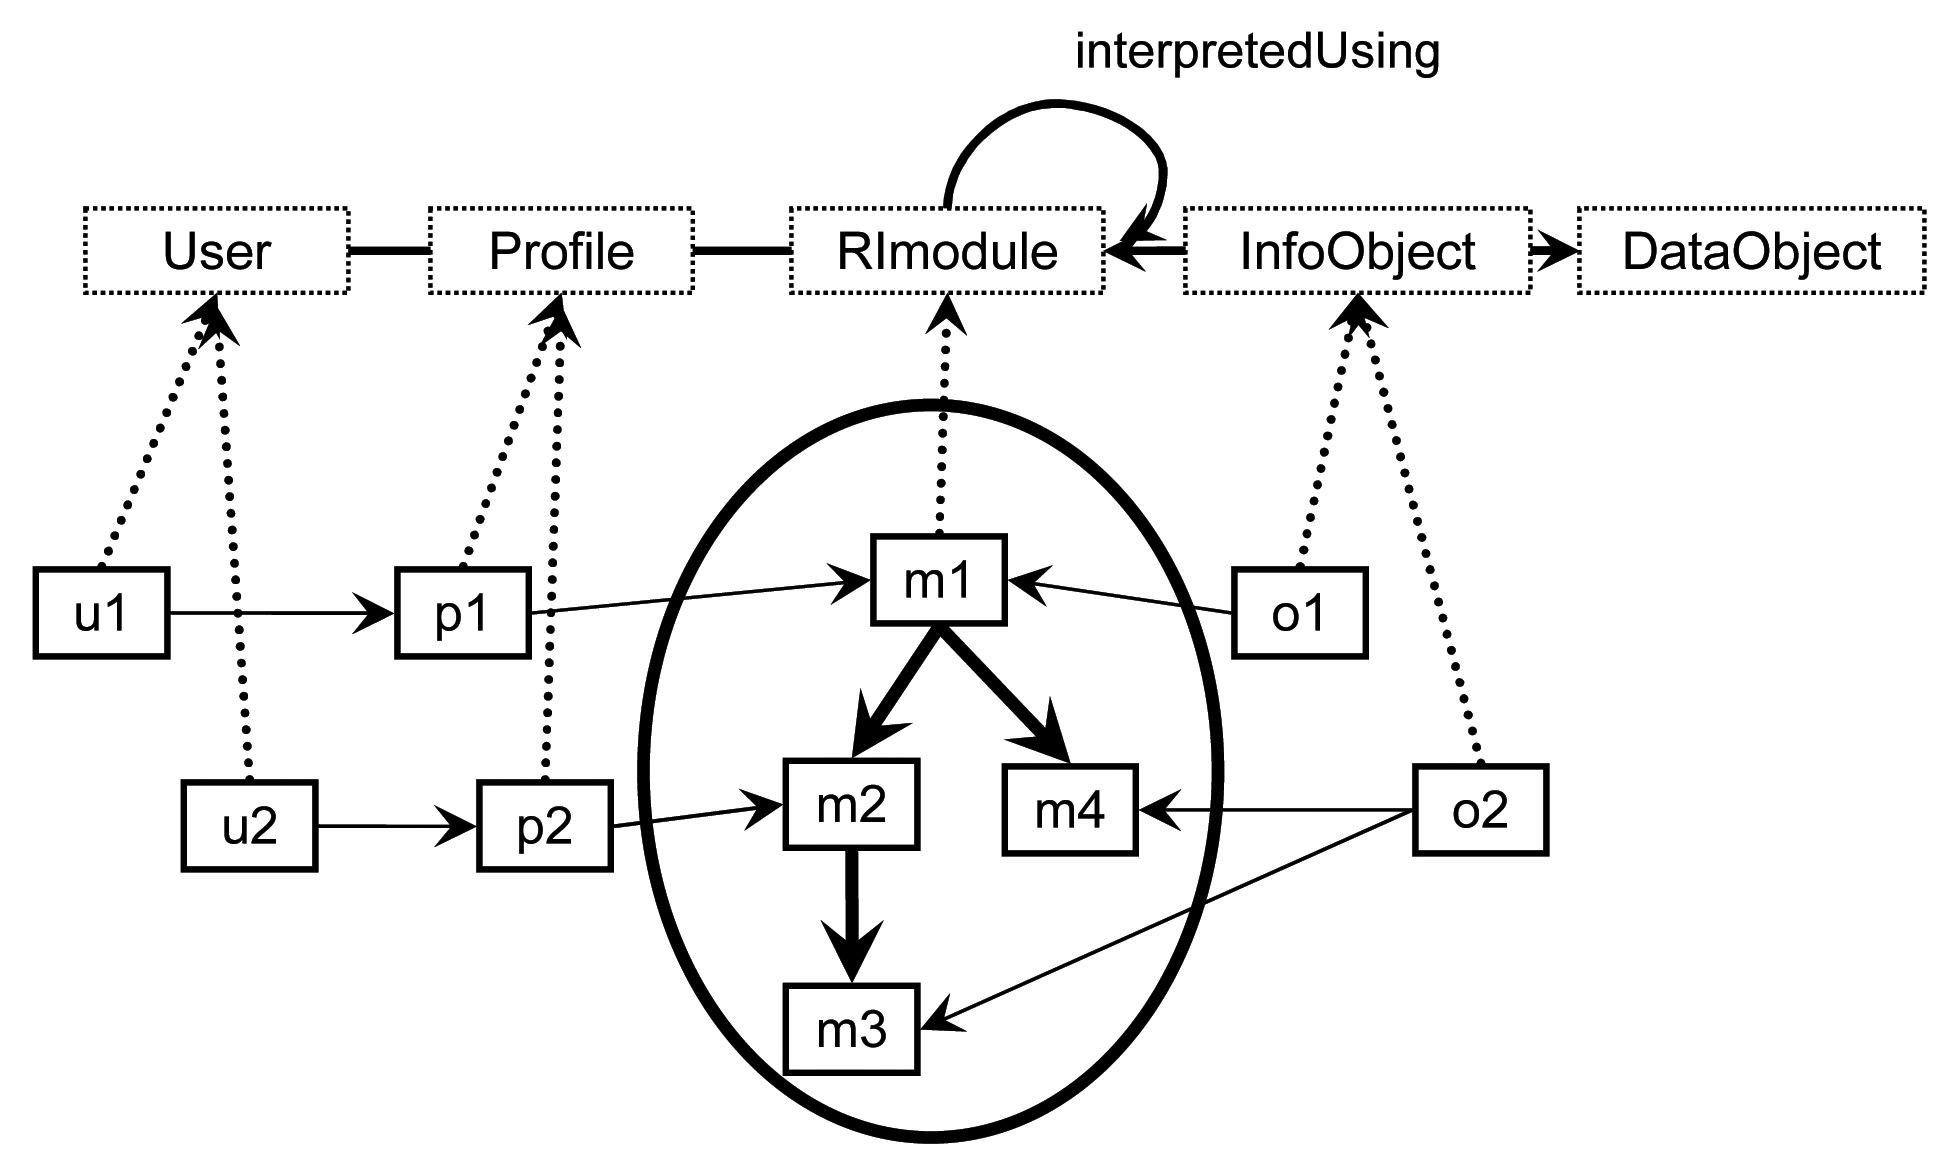 Obrázek č. 3: Modelování uživatelů, profilů, modulů a závislostí